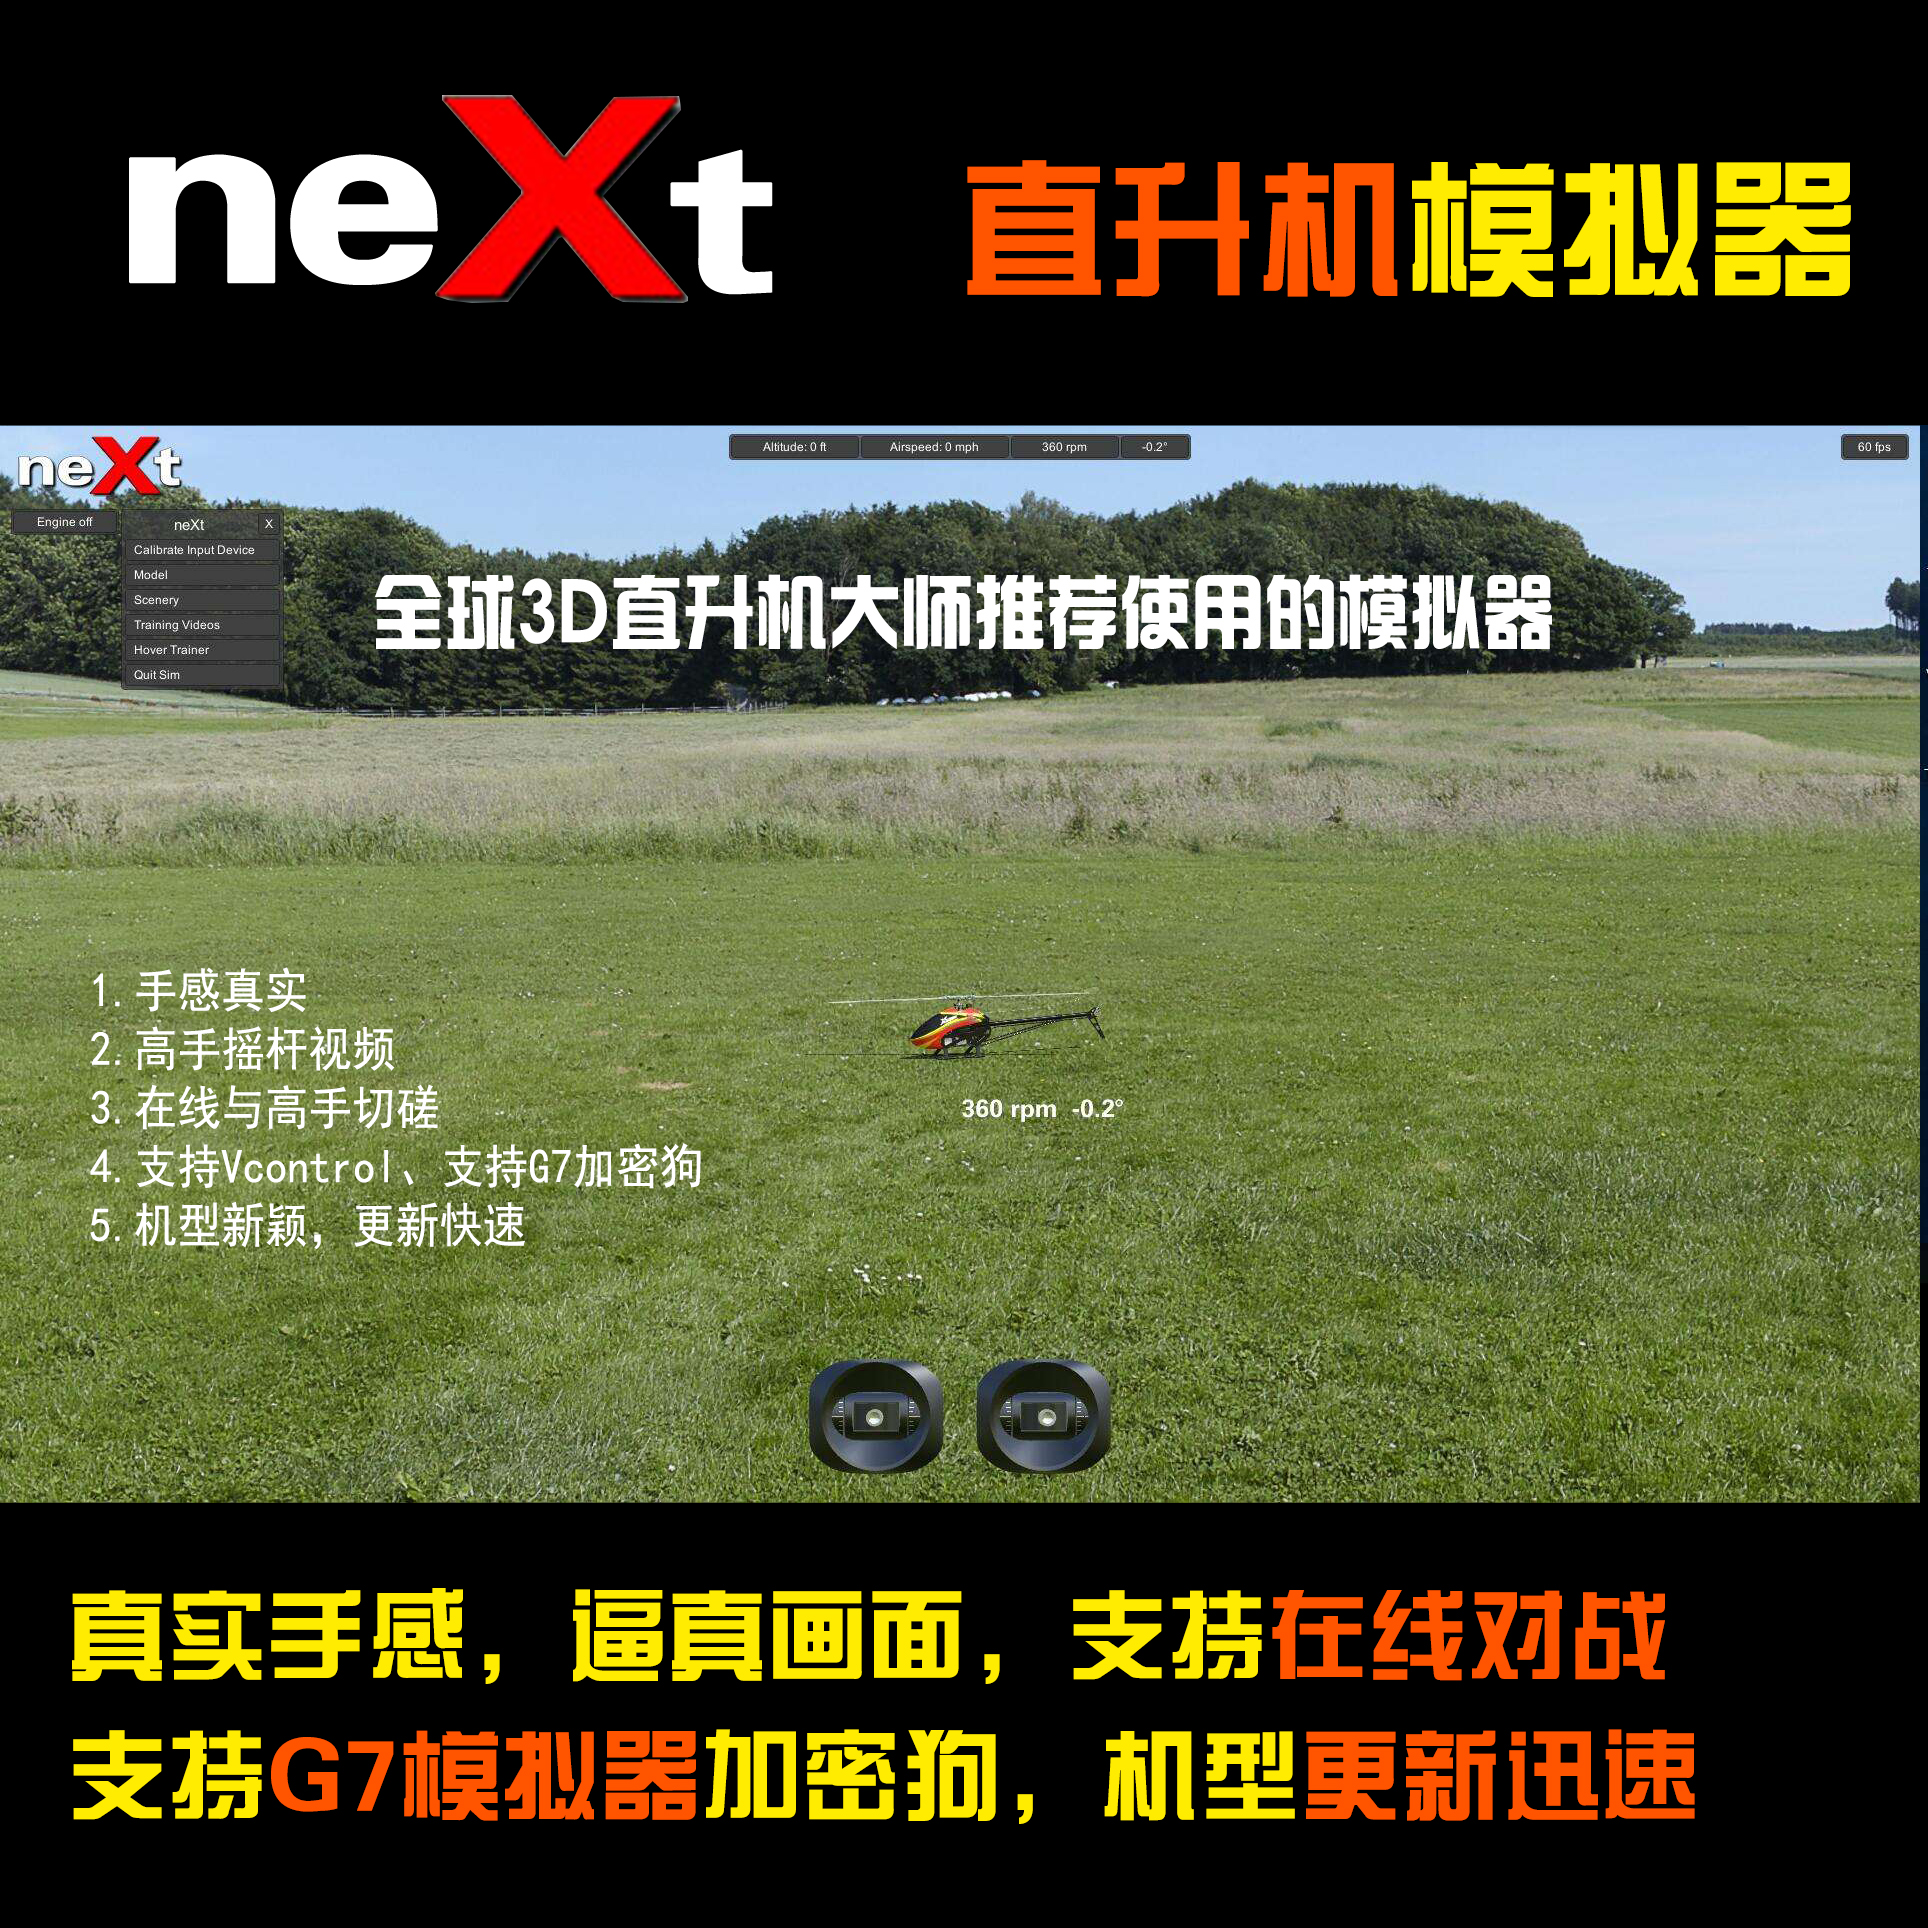 云翼模型 中文 CGM Next 航模 3D直升机专用 正版模拟器 序列号